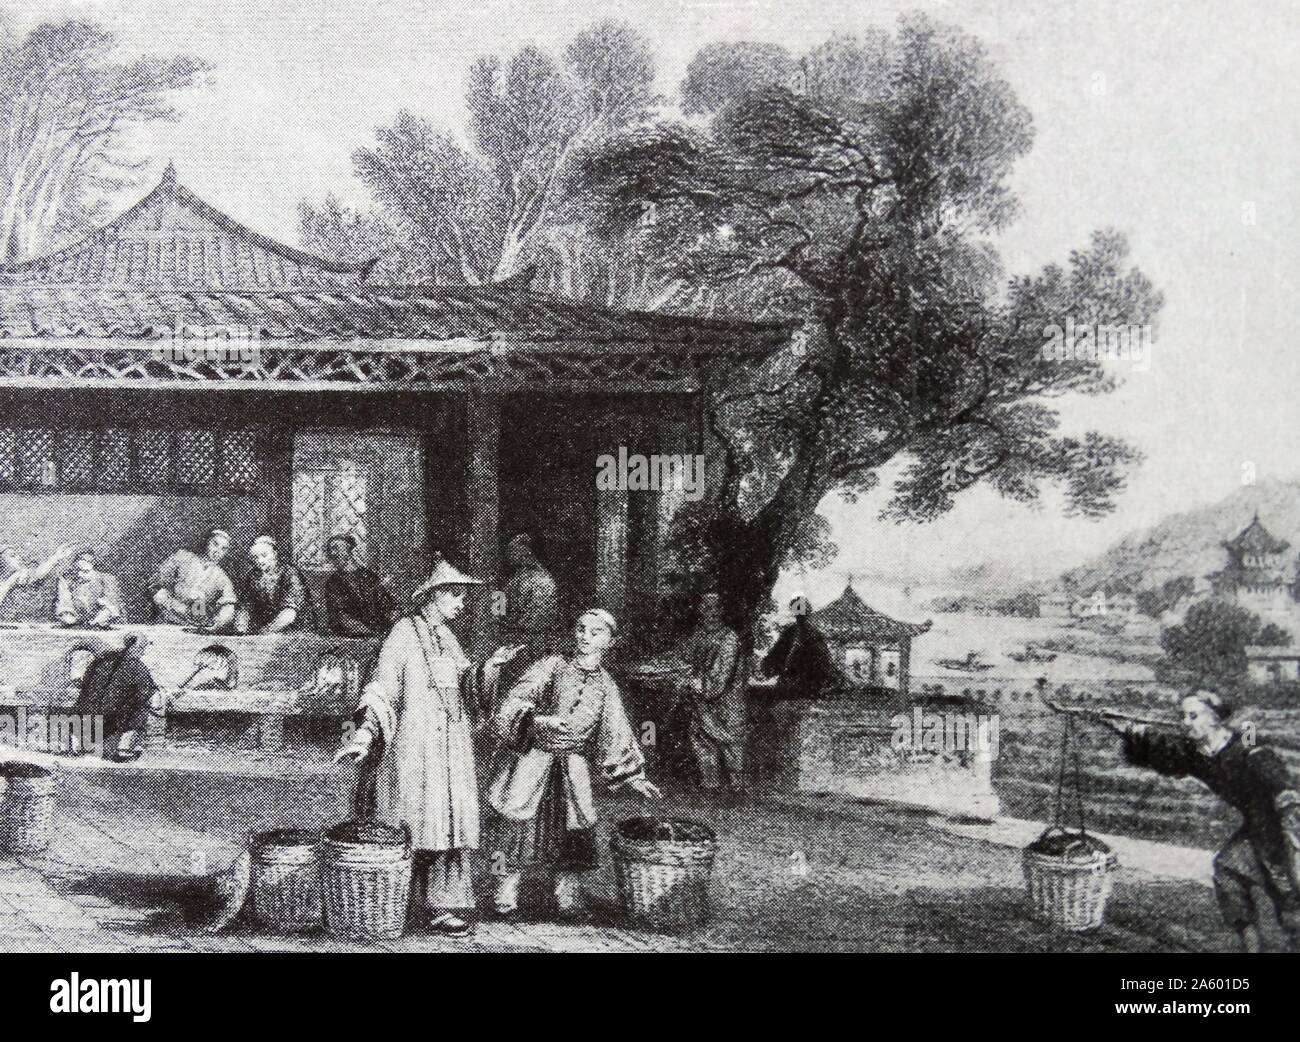 Plantation de thé chinois du 18e siècle ; Banque D'Images